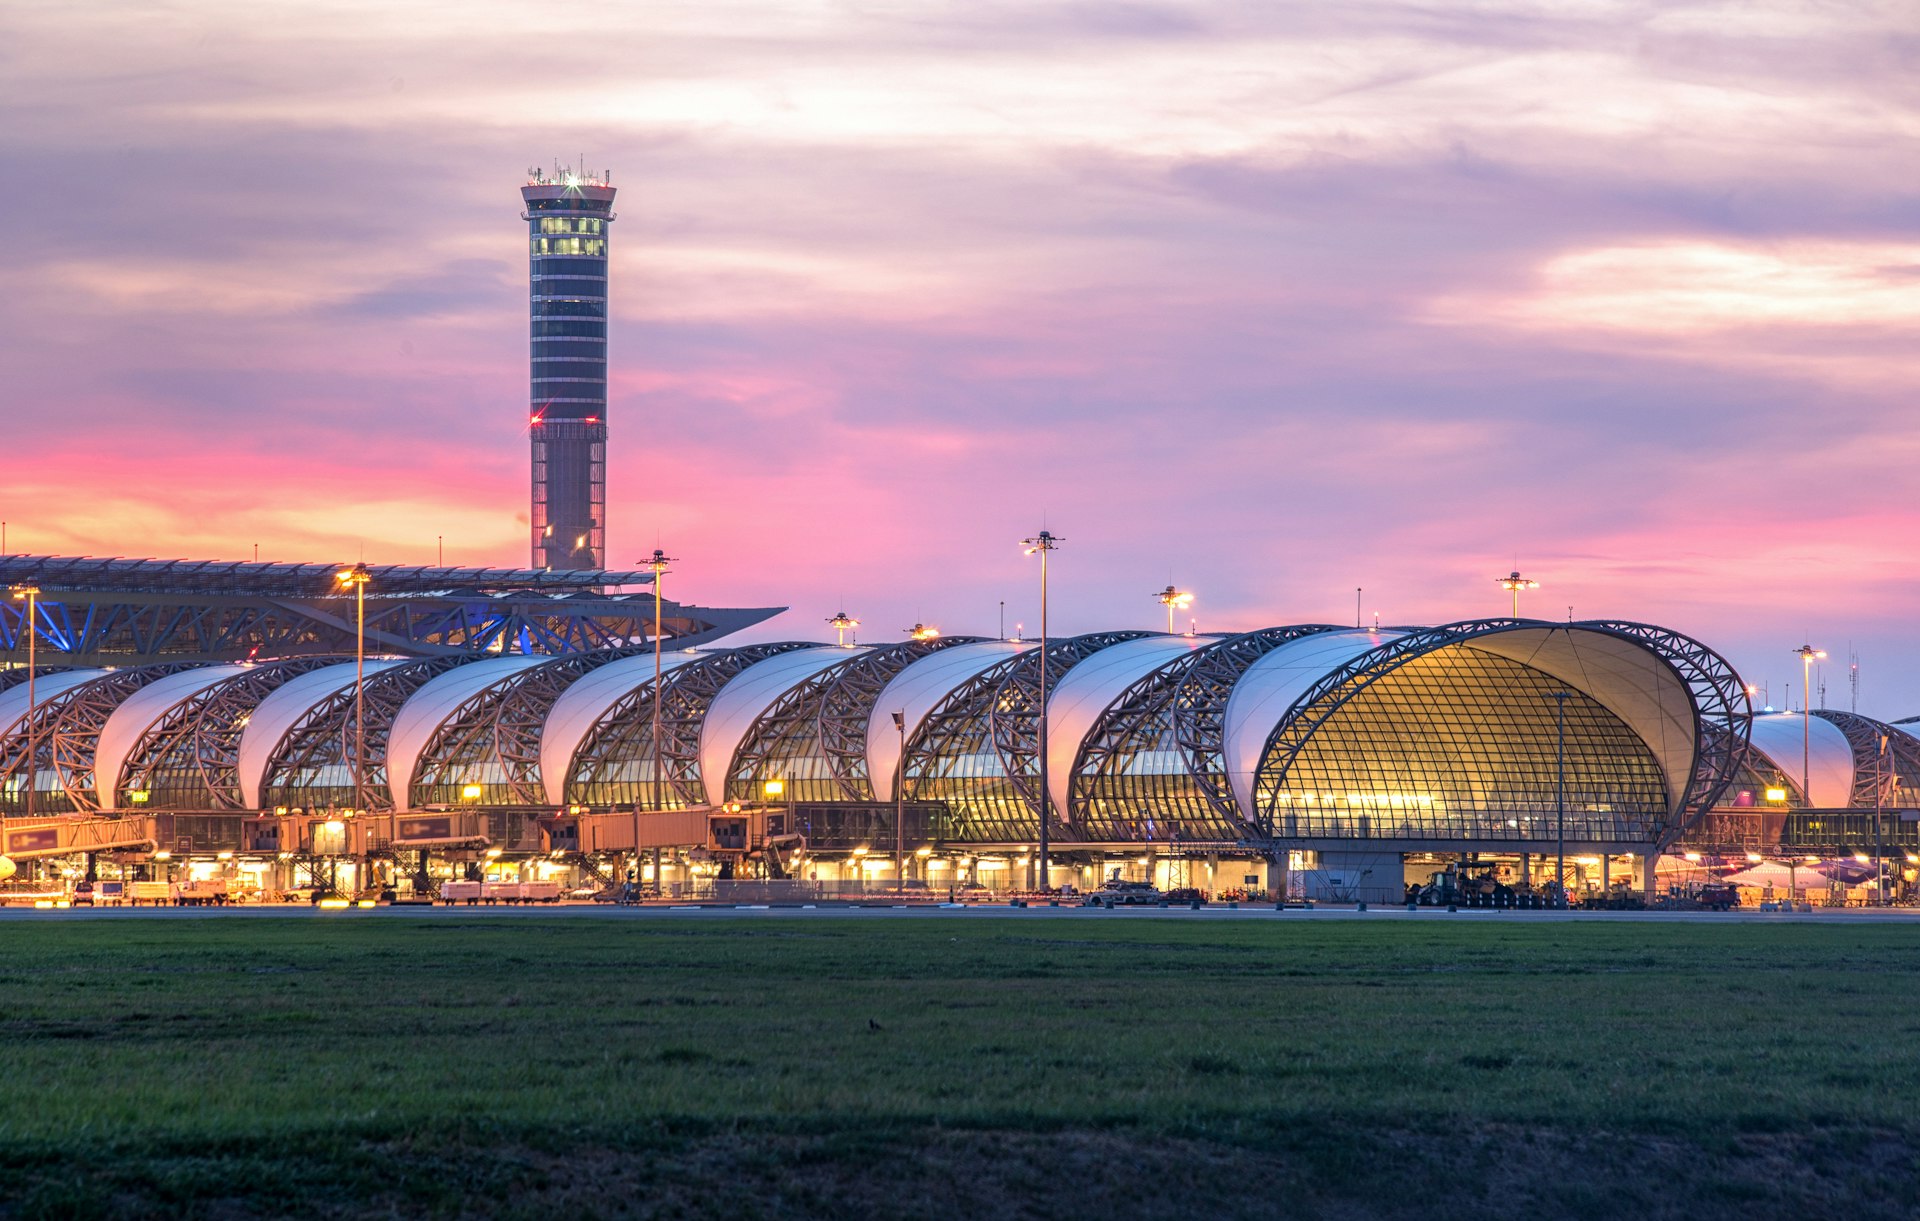 The exterior of Suvarnabhumi Airport during dusk